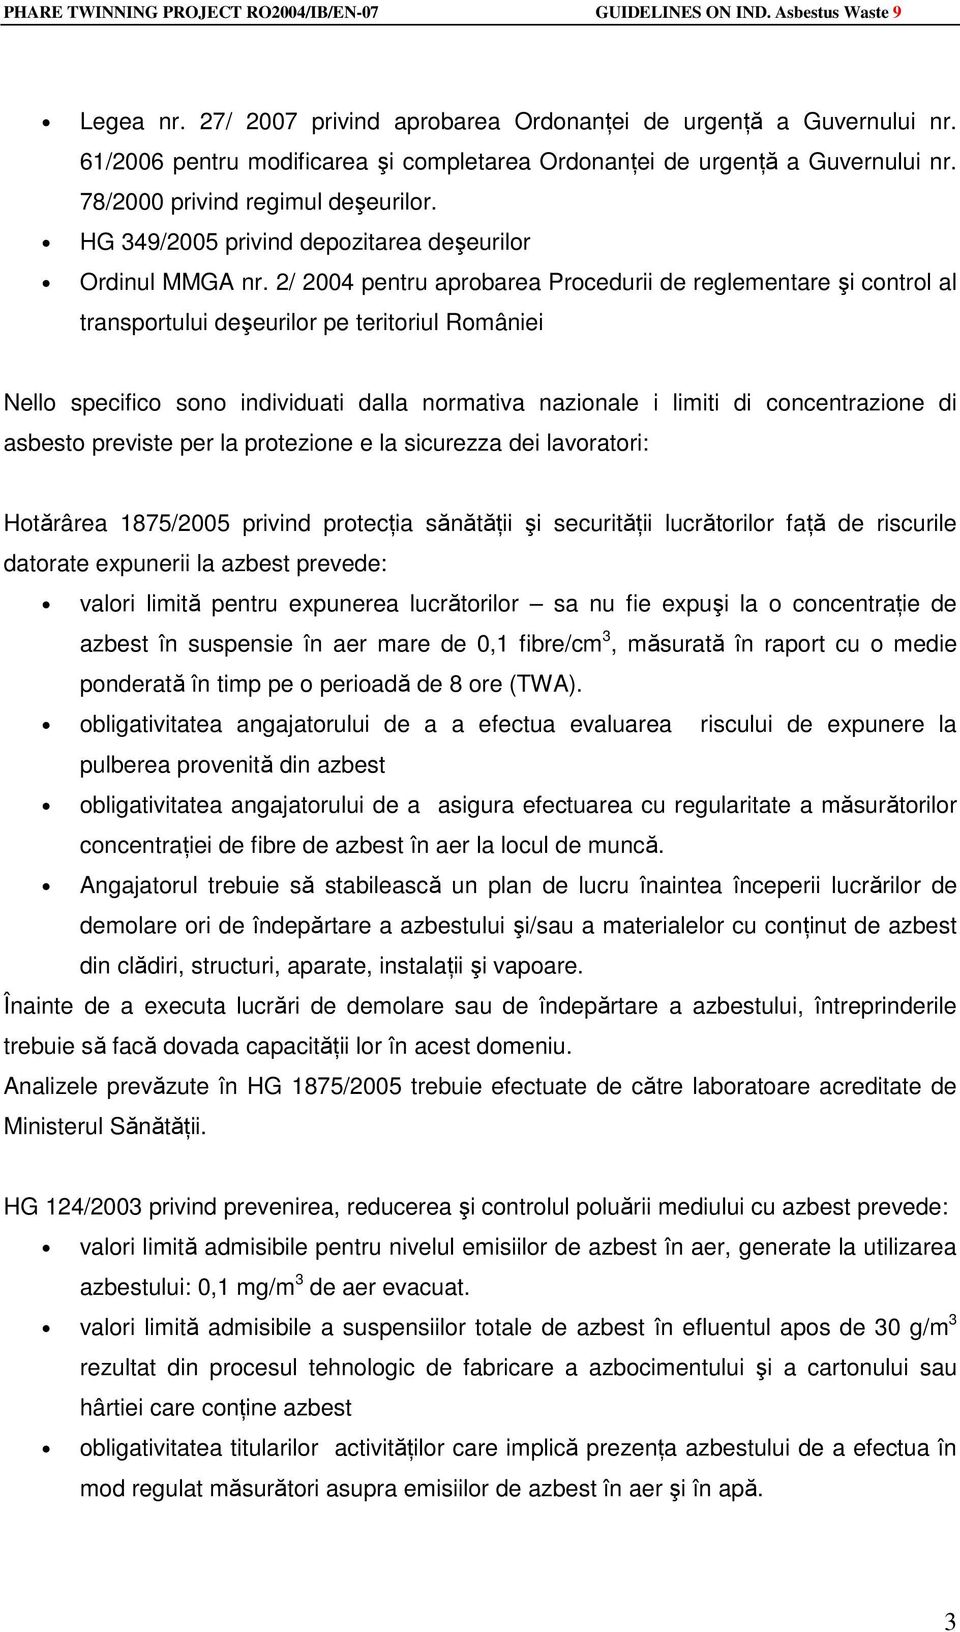 2/ 2004 pentru aprobarea Procedurii de reglementare şi control al transportului deşeurilor pe teritoriul României Nello specifico sono individuati dalla normativa nazionale i limiti di concentrazione